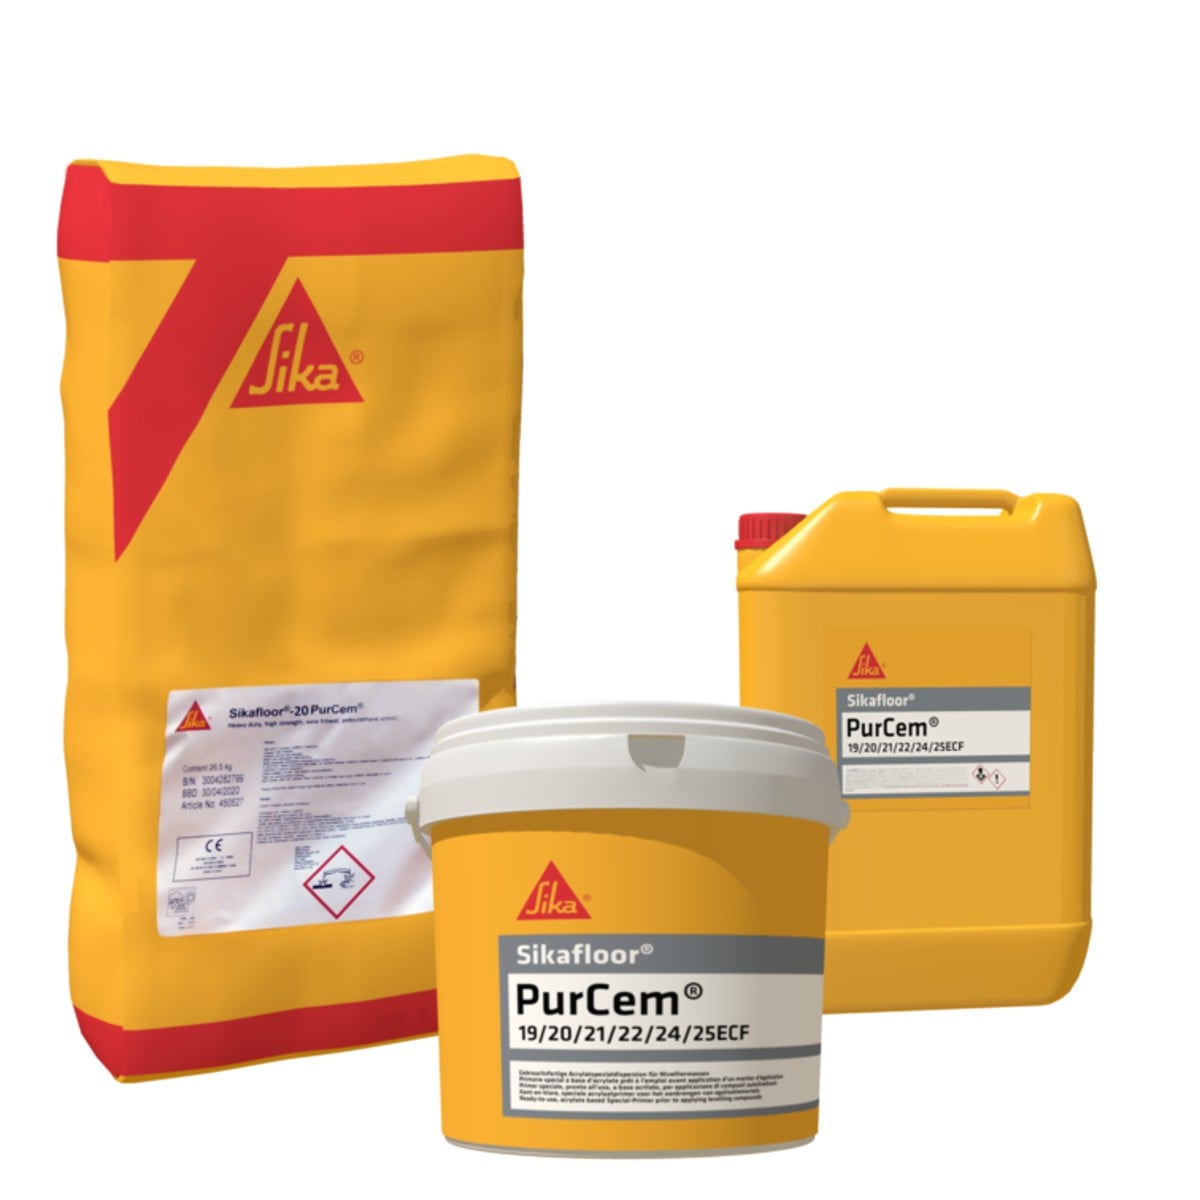 Sikafloor®-20 PurCem® - Поліуретаново-цементна стяжка для застосування в зонах з важкими умовами експлуатації